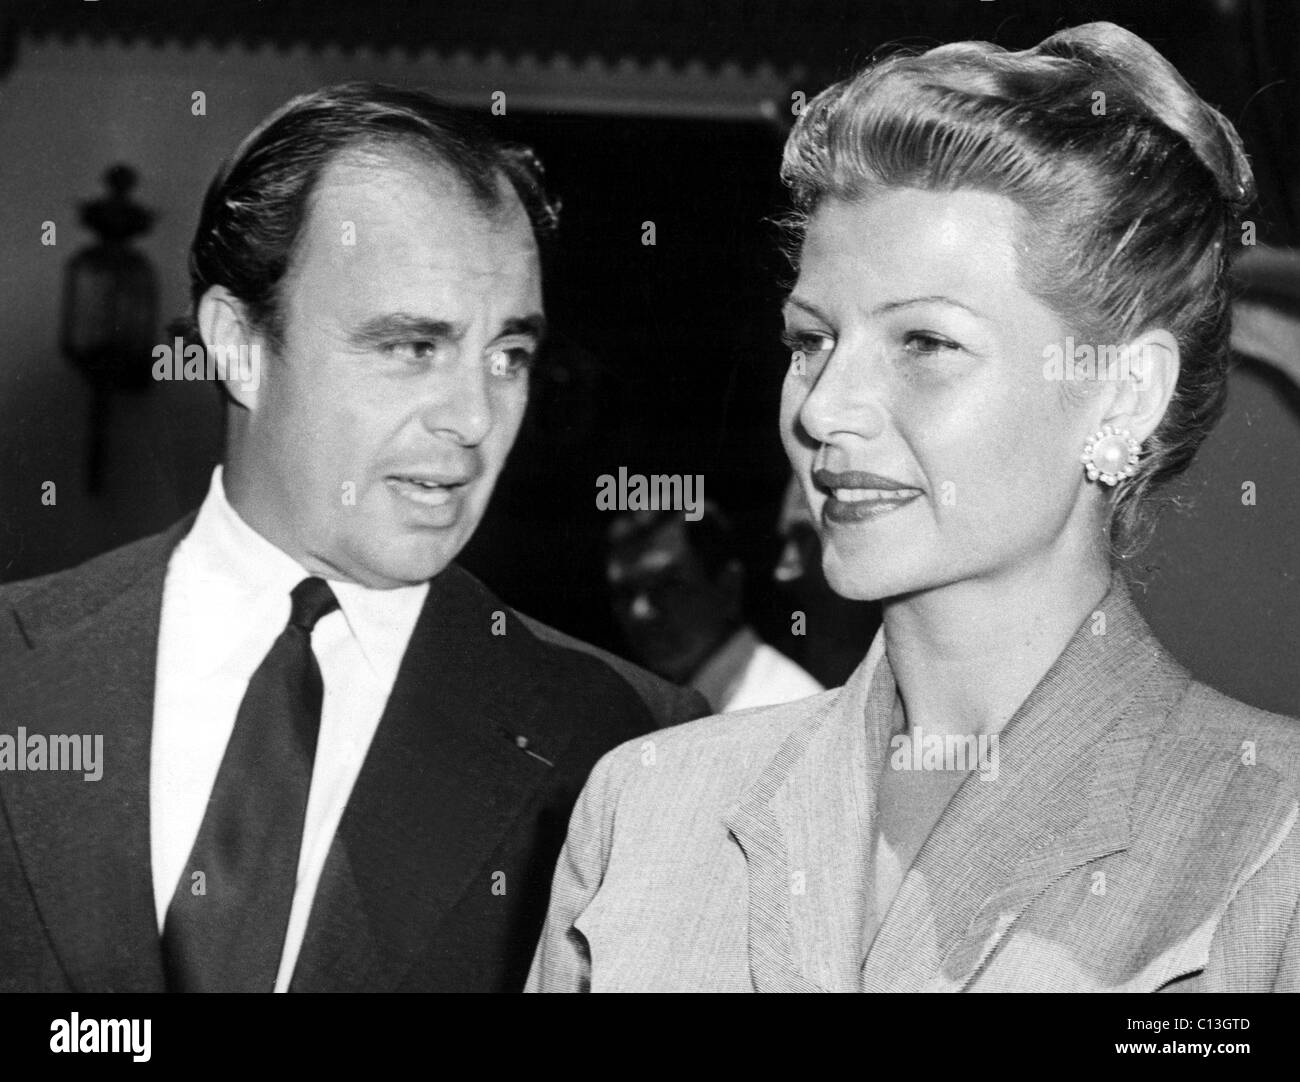 Le PRINCE ALY KHAN avec le conjoint Rita Hayworth, 1952 Banque D'Images